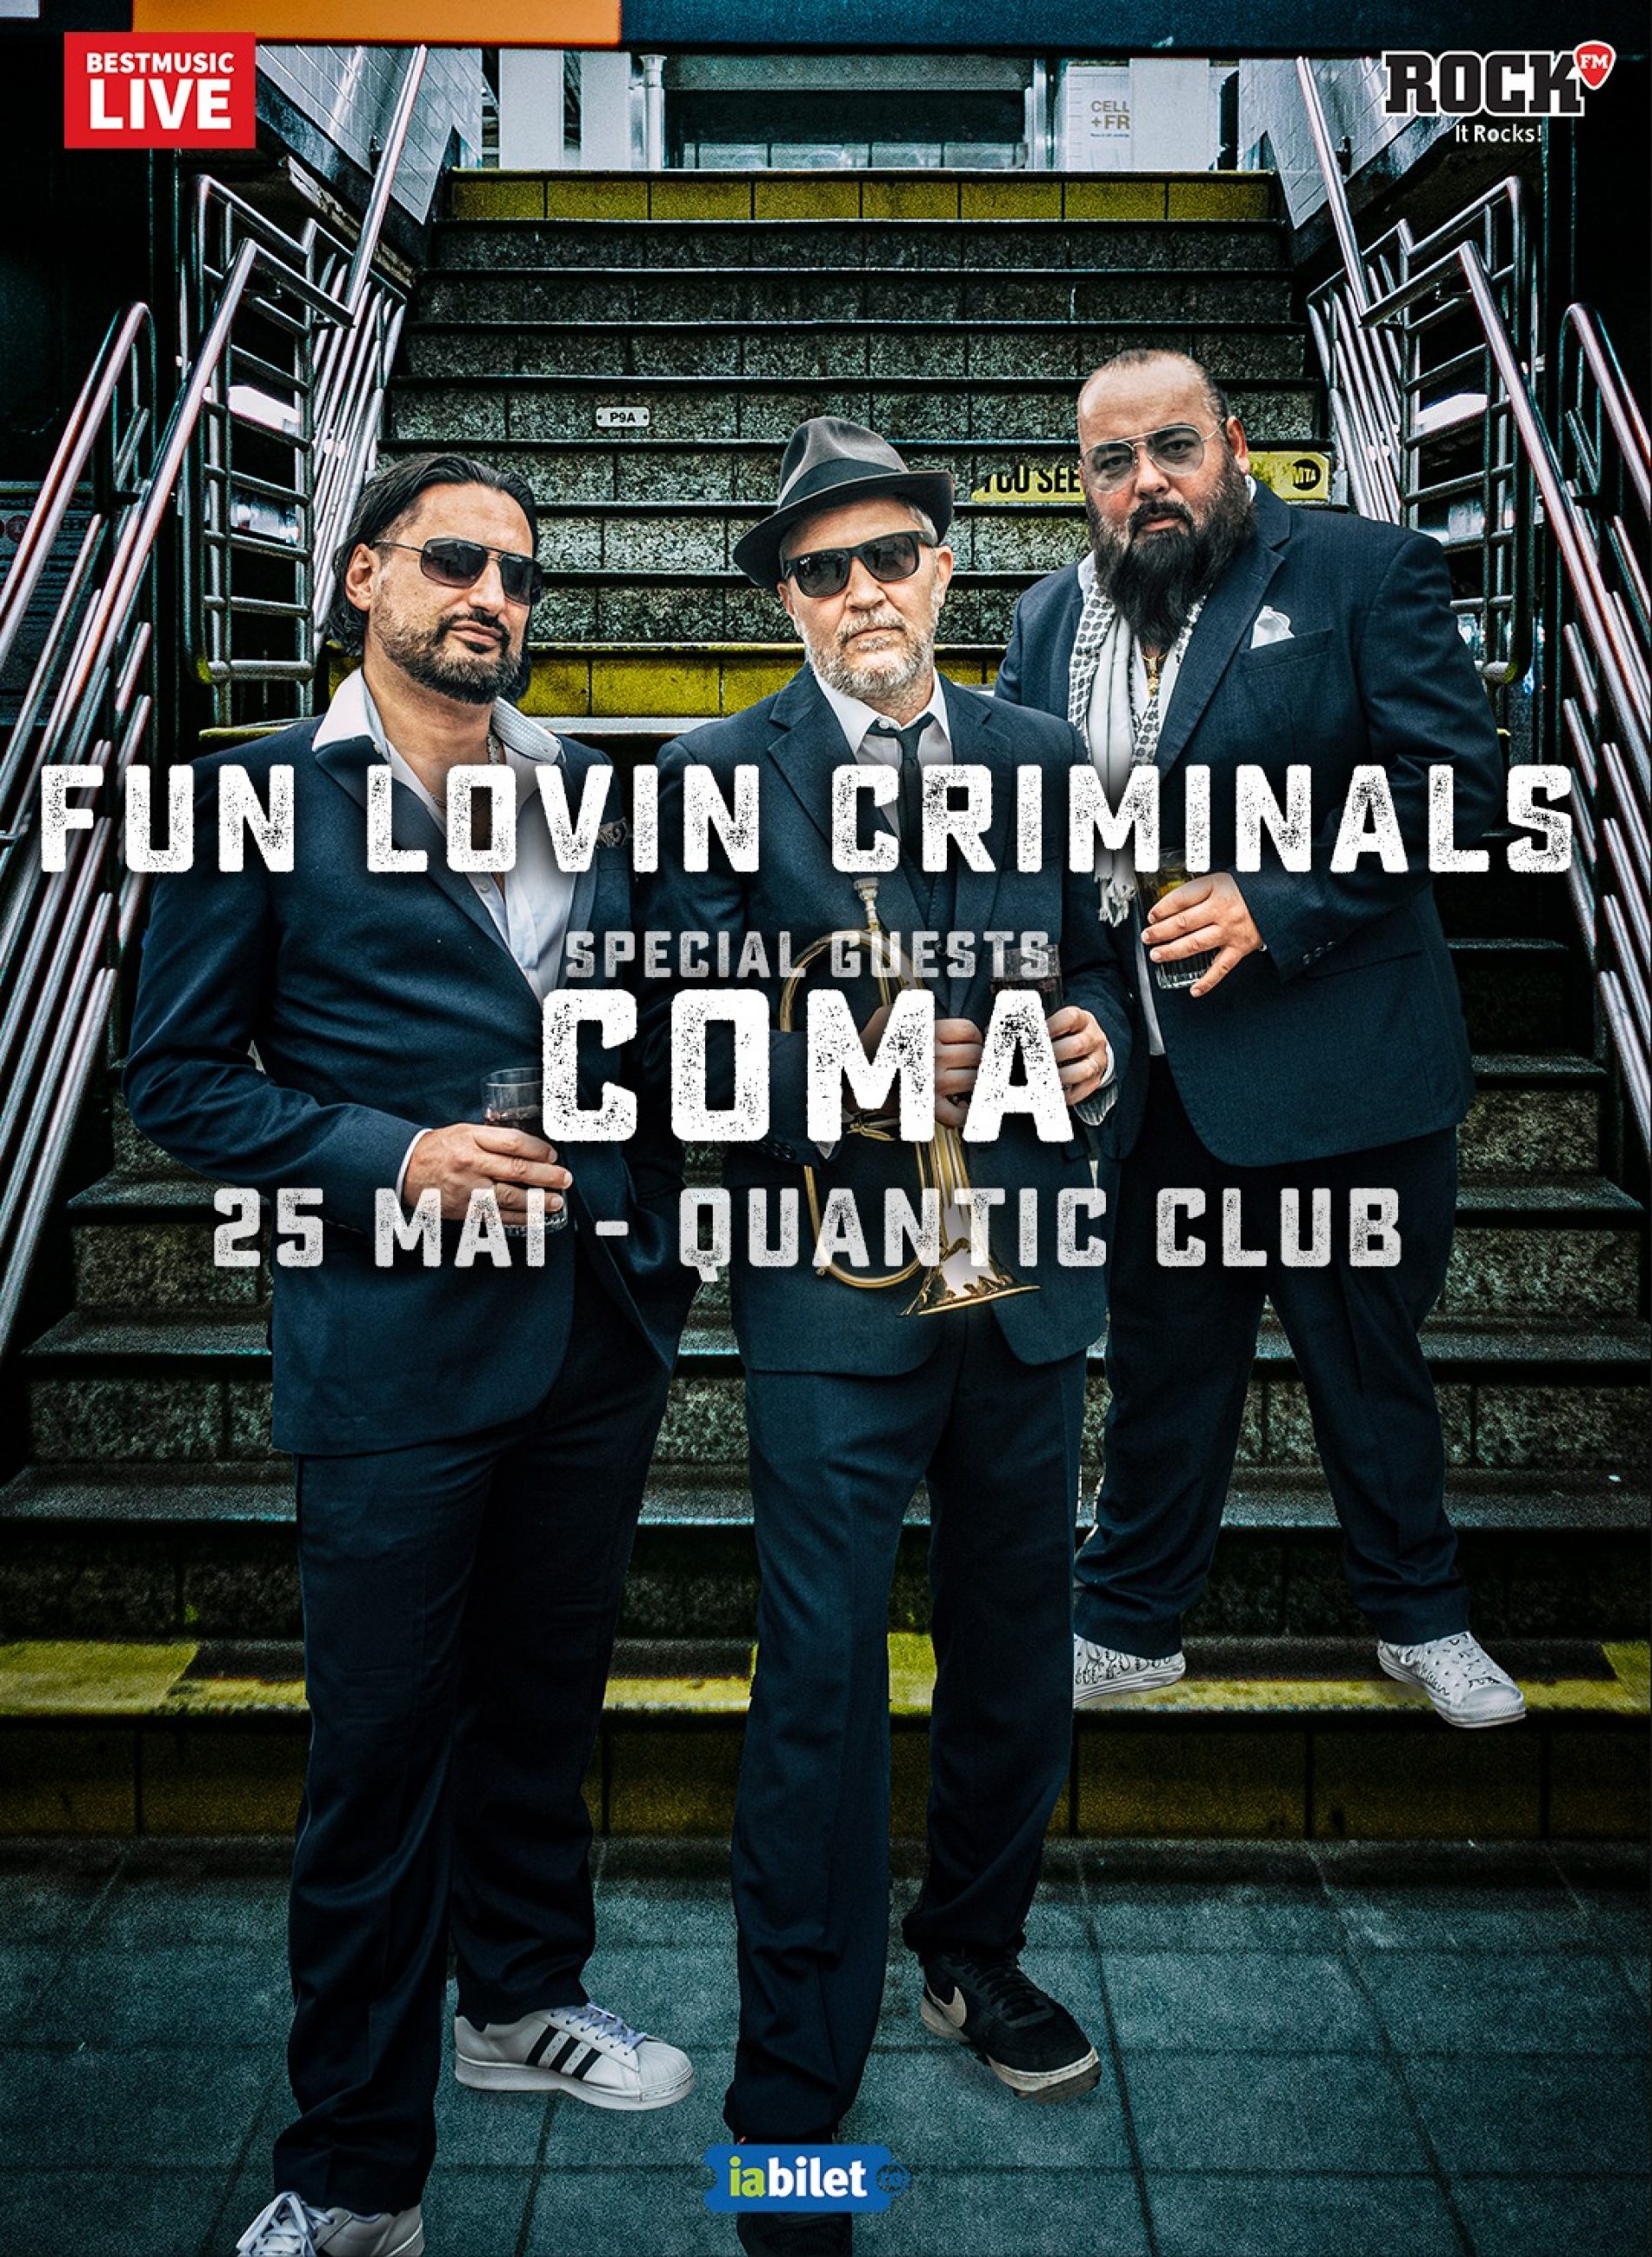 Bilete de grup pentru concertul Fun Lovin’ Criminals din Quantic